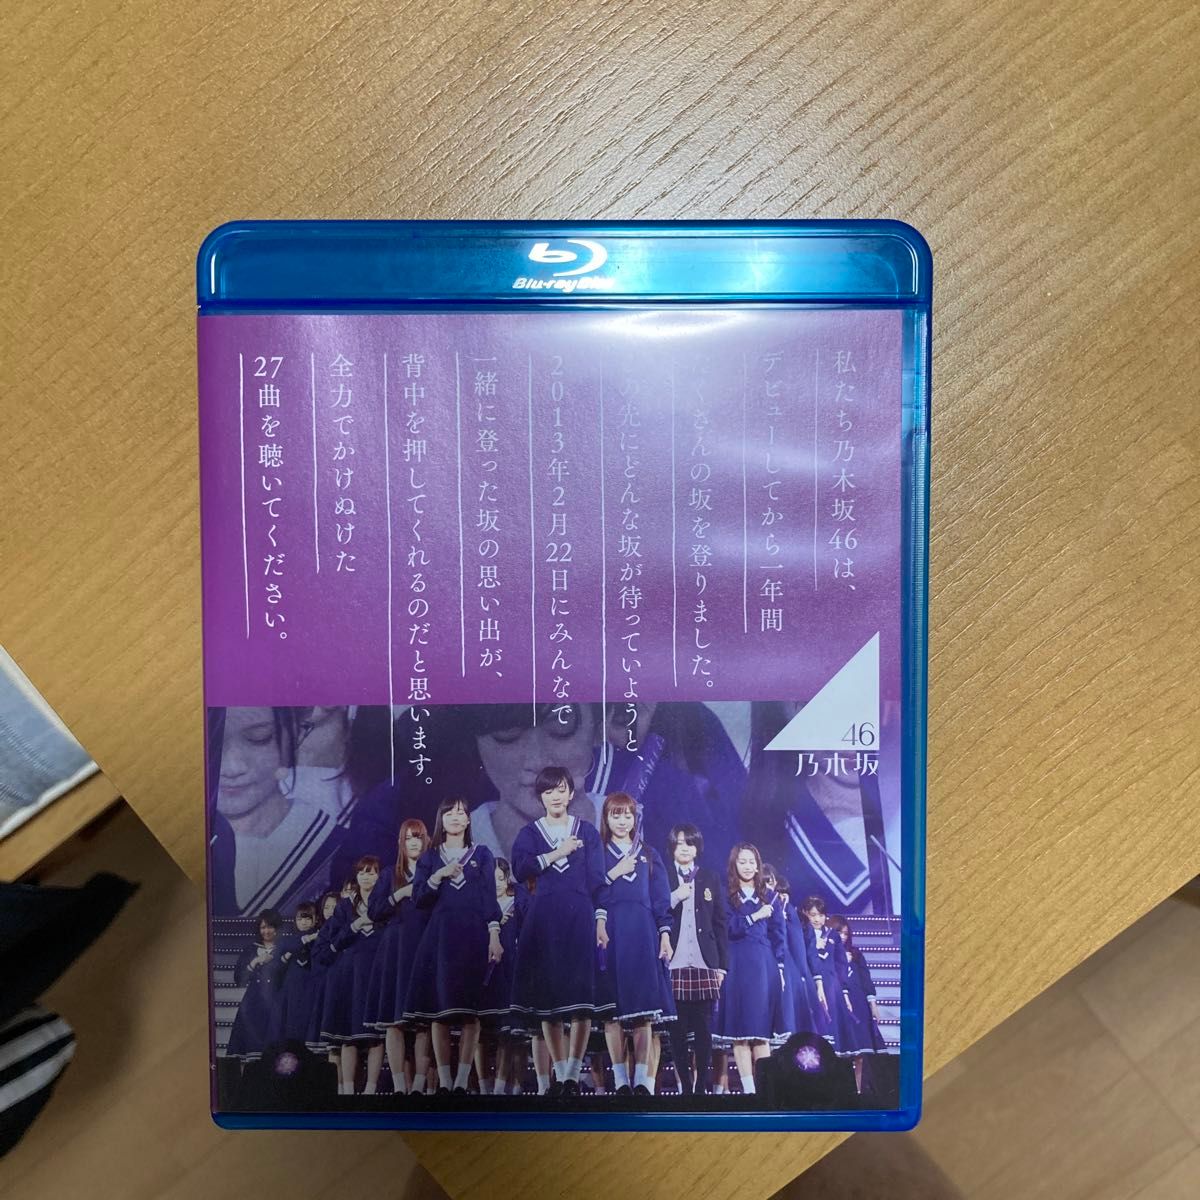 乃木坂46 1ST YEAR BIRTHDAY LIVE 2013.2.22 MAKUHARI MESSE [Blu-ray]